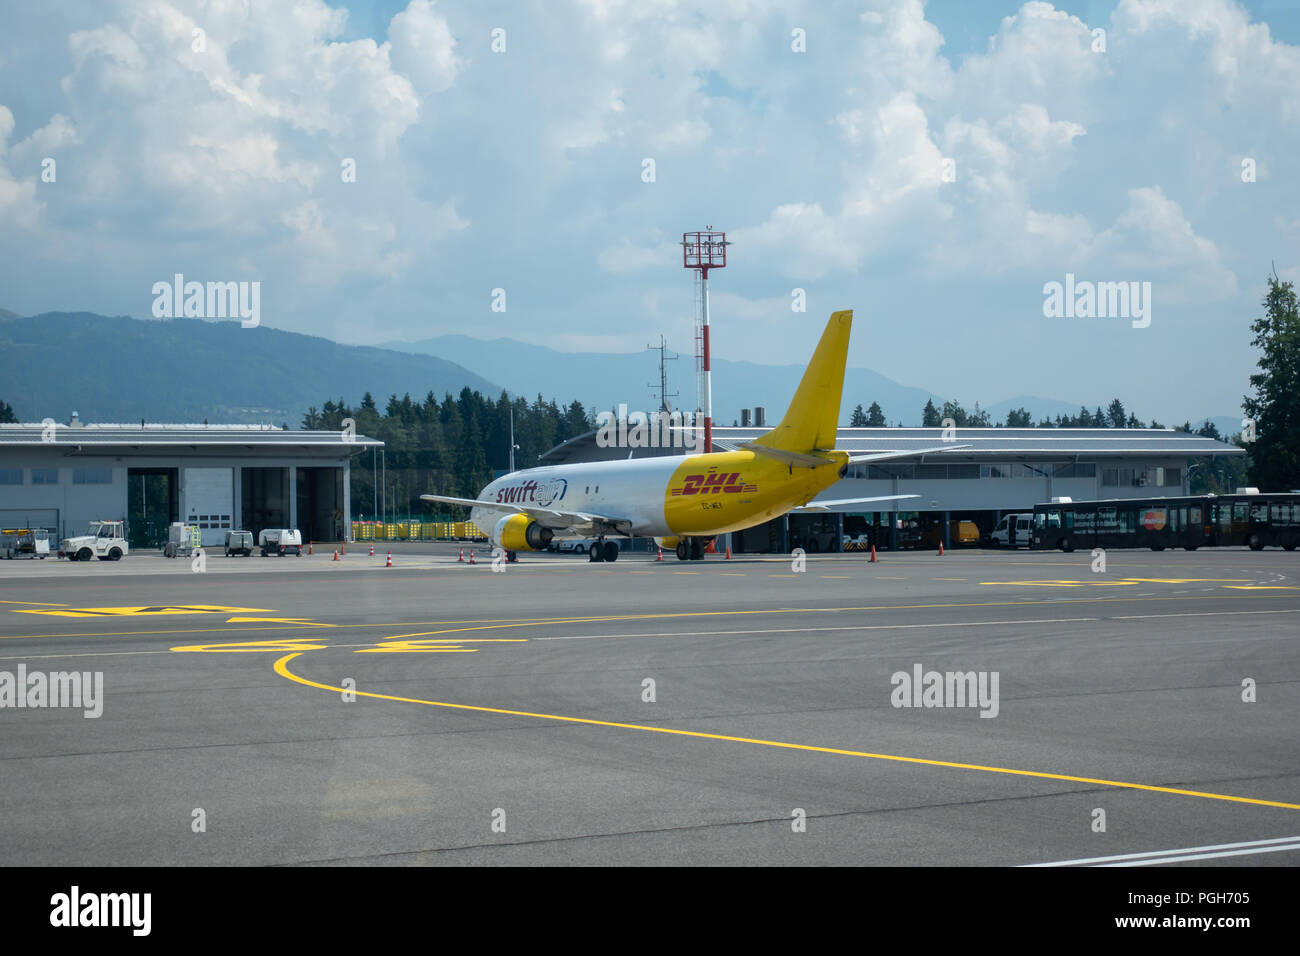 Brnik, Slovenija - 23 août 2018 : Swift Air Boeing B737 jaune avec logo DHL sur la queue à l'aéroport de Ljubljana en attente de chargement sur tarmac. Banque D'Images